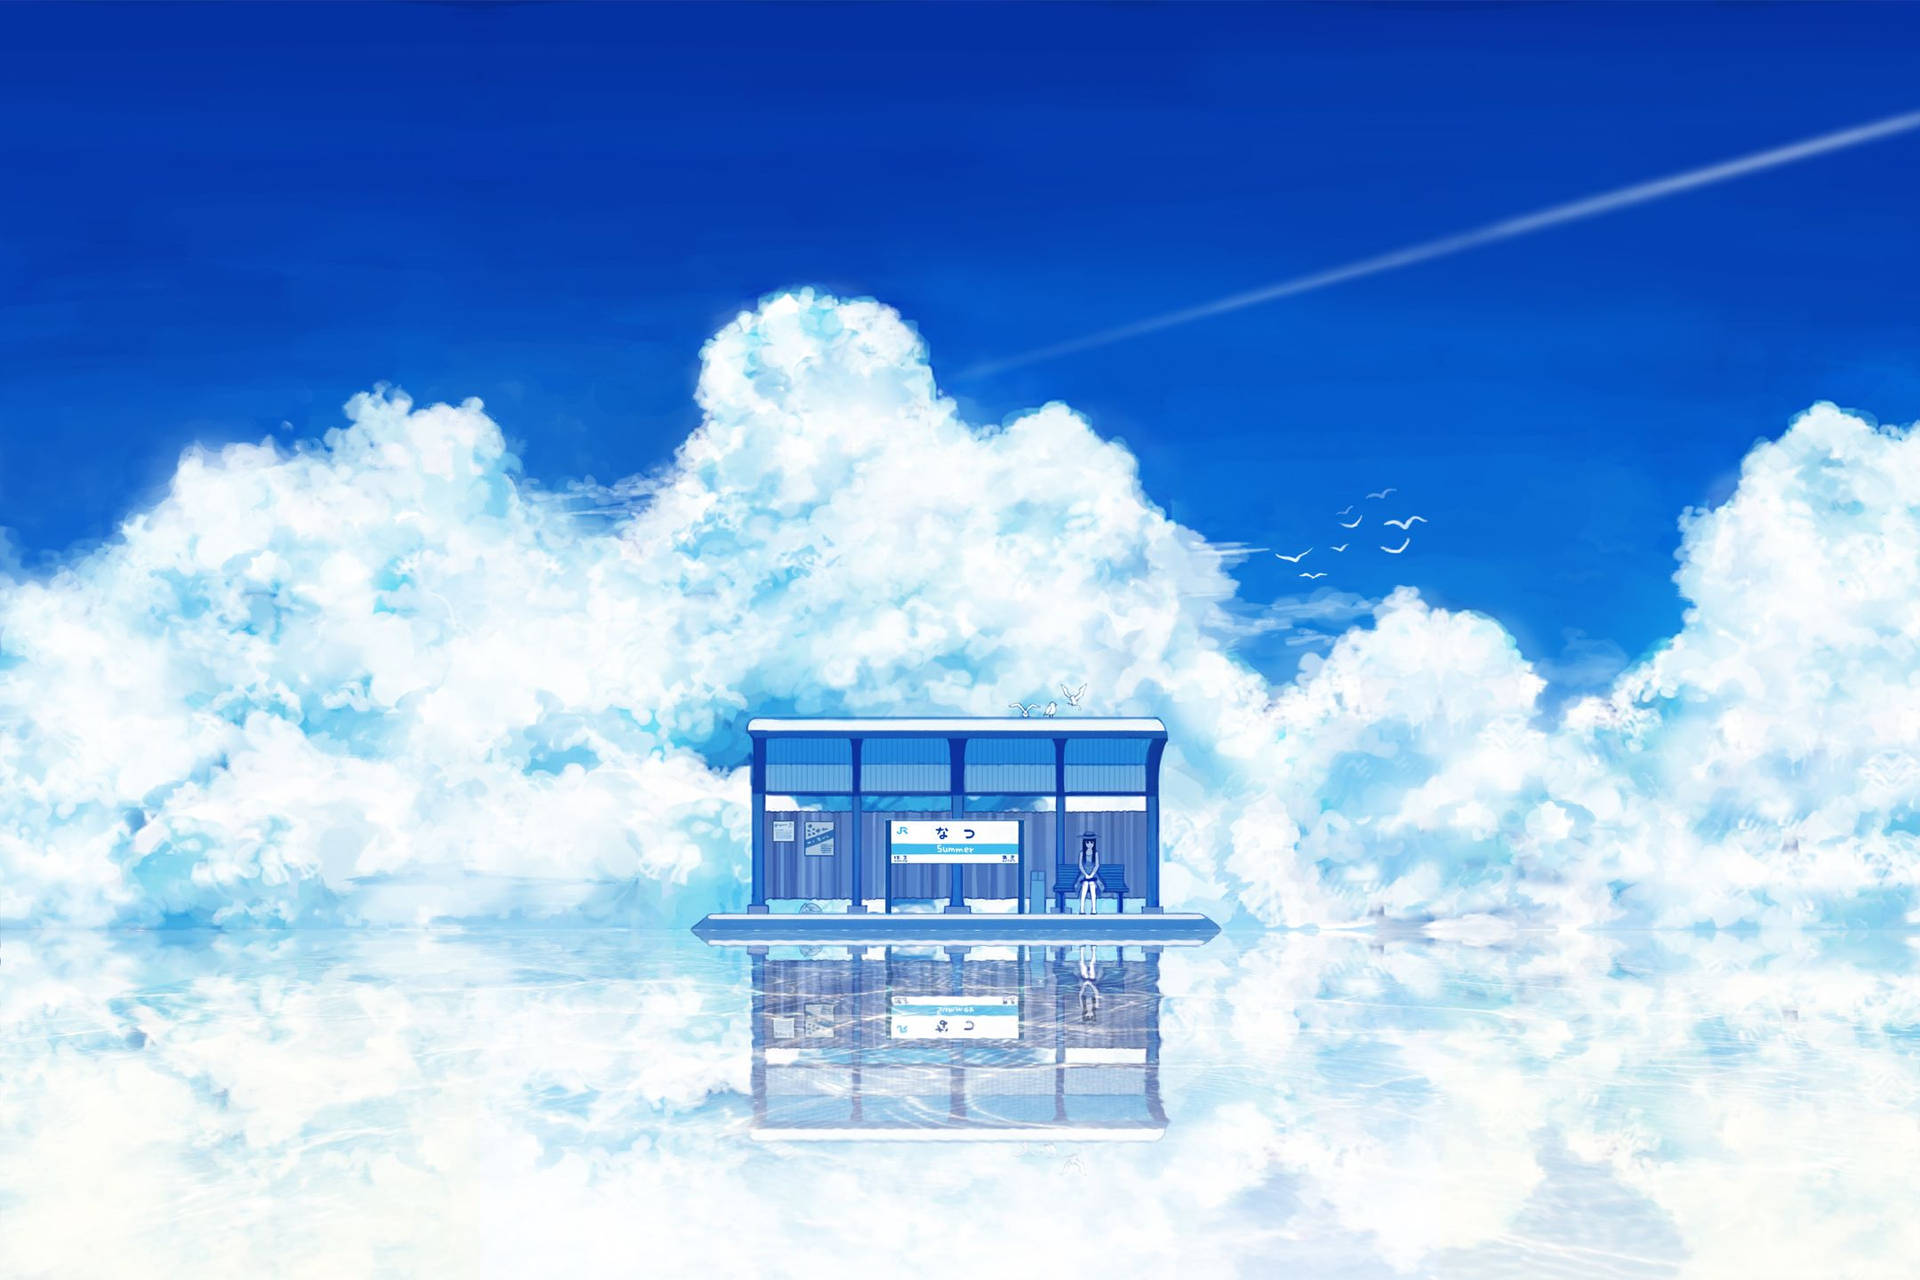 Waiting Station Anime Scenery Background